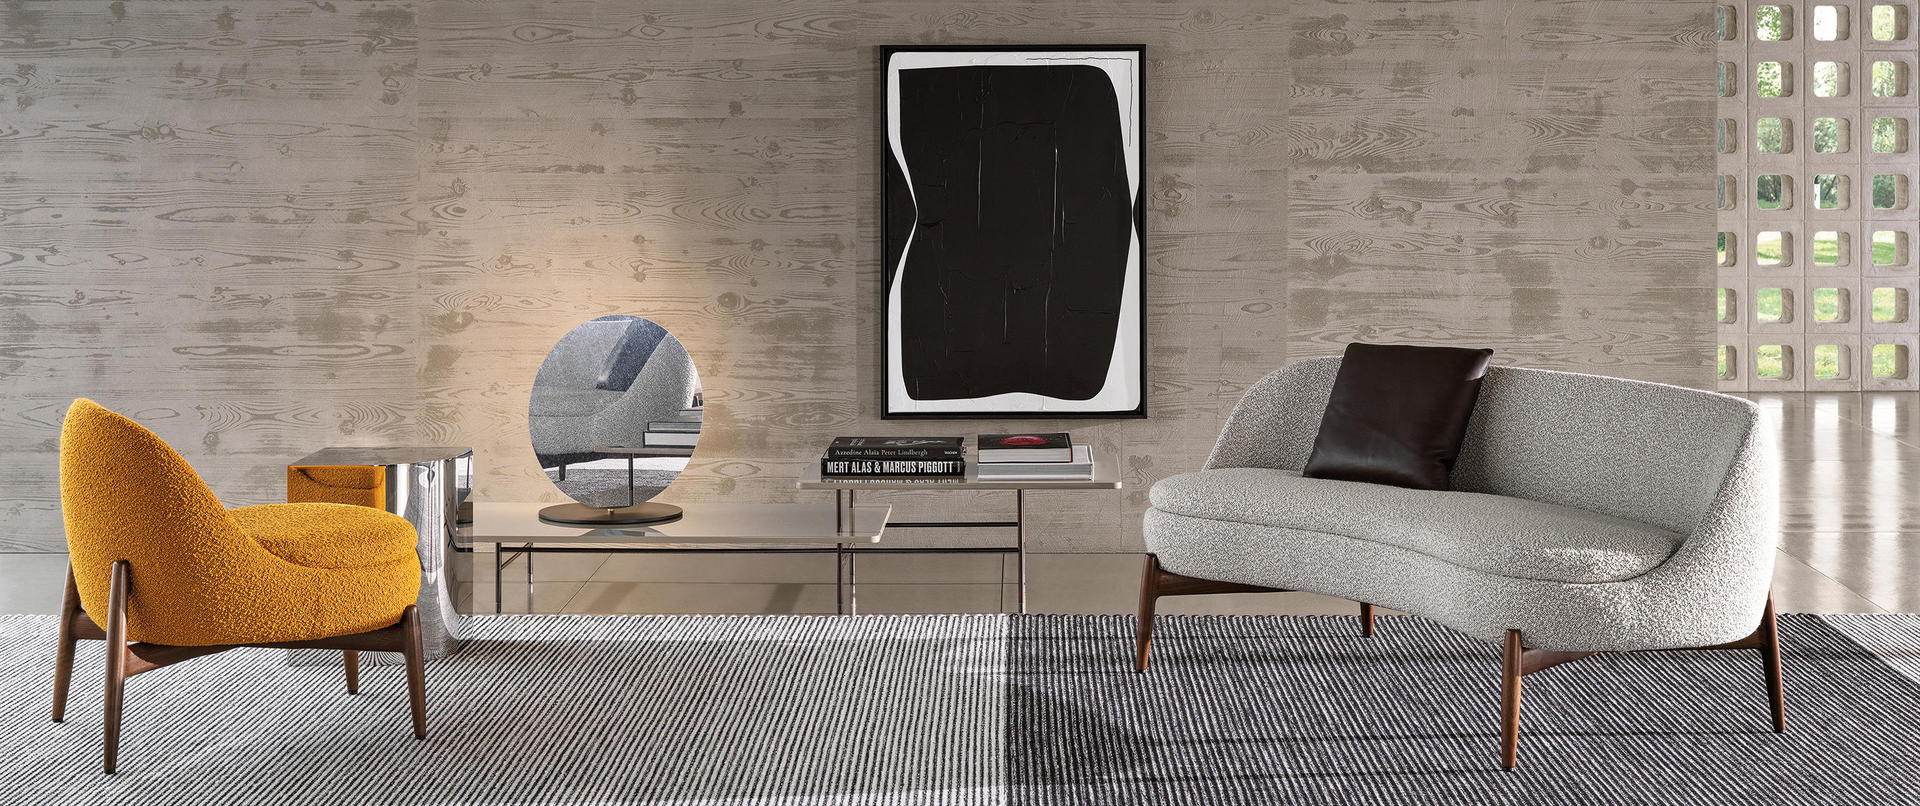 HORA Barneveld Minotti Sendai bank modulaire sofa design meubelen designmeubelen fauteuil armchair 3.jpg